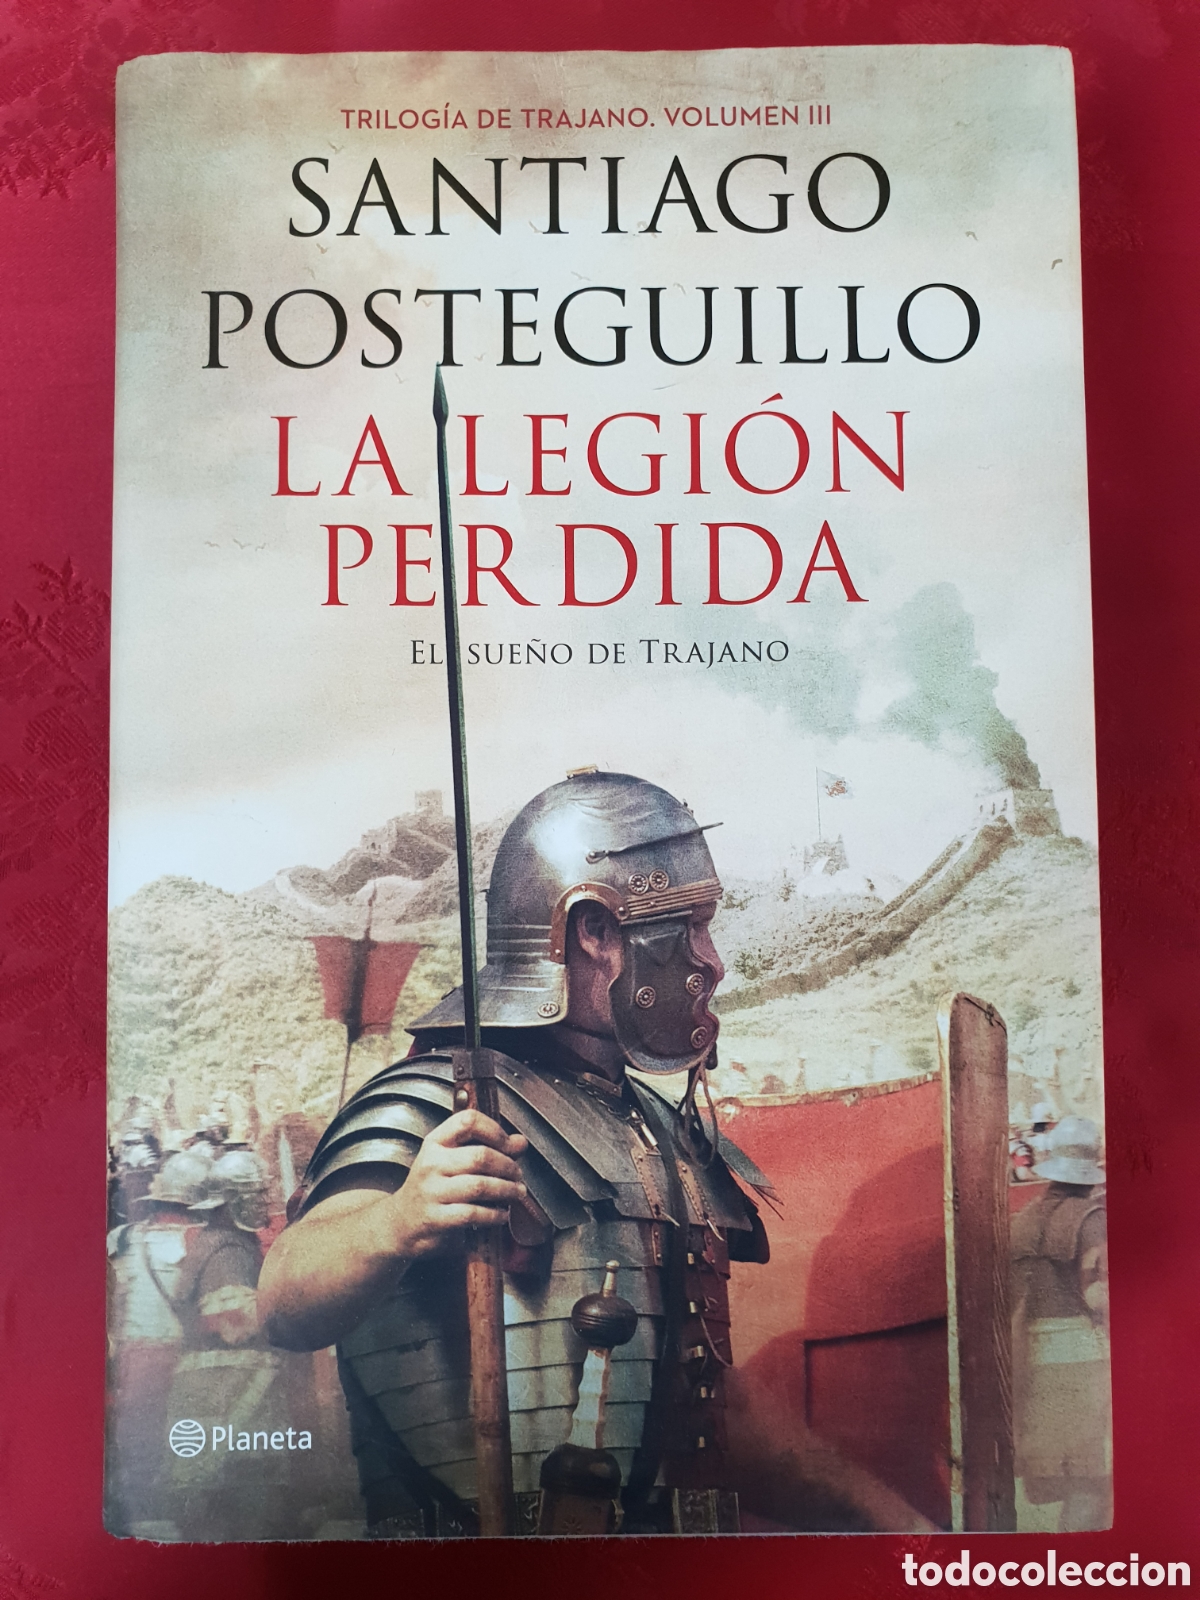 Novela Histórica: La legión perdida: Trilogía de Trajano - Santiago  Posteguillo